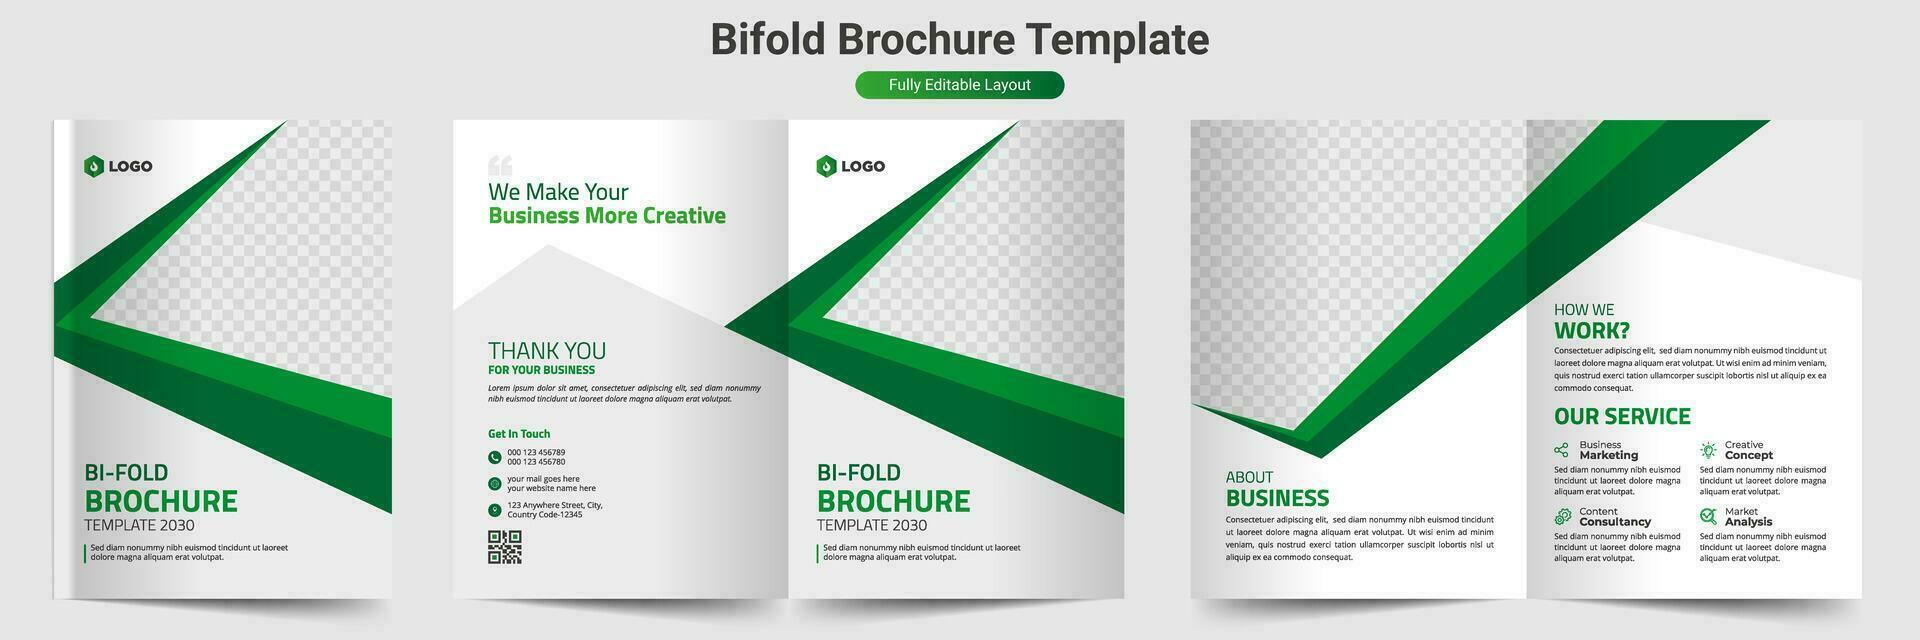 kreatives bifold-broschürenvorlagendesign vektor